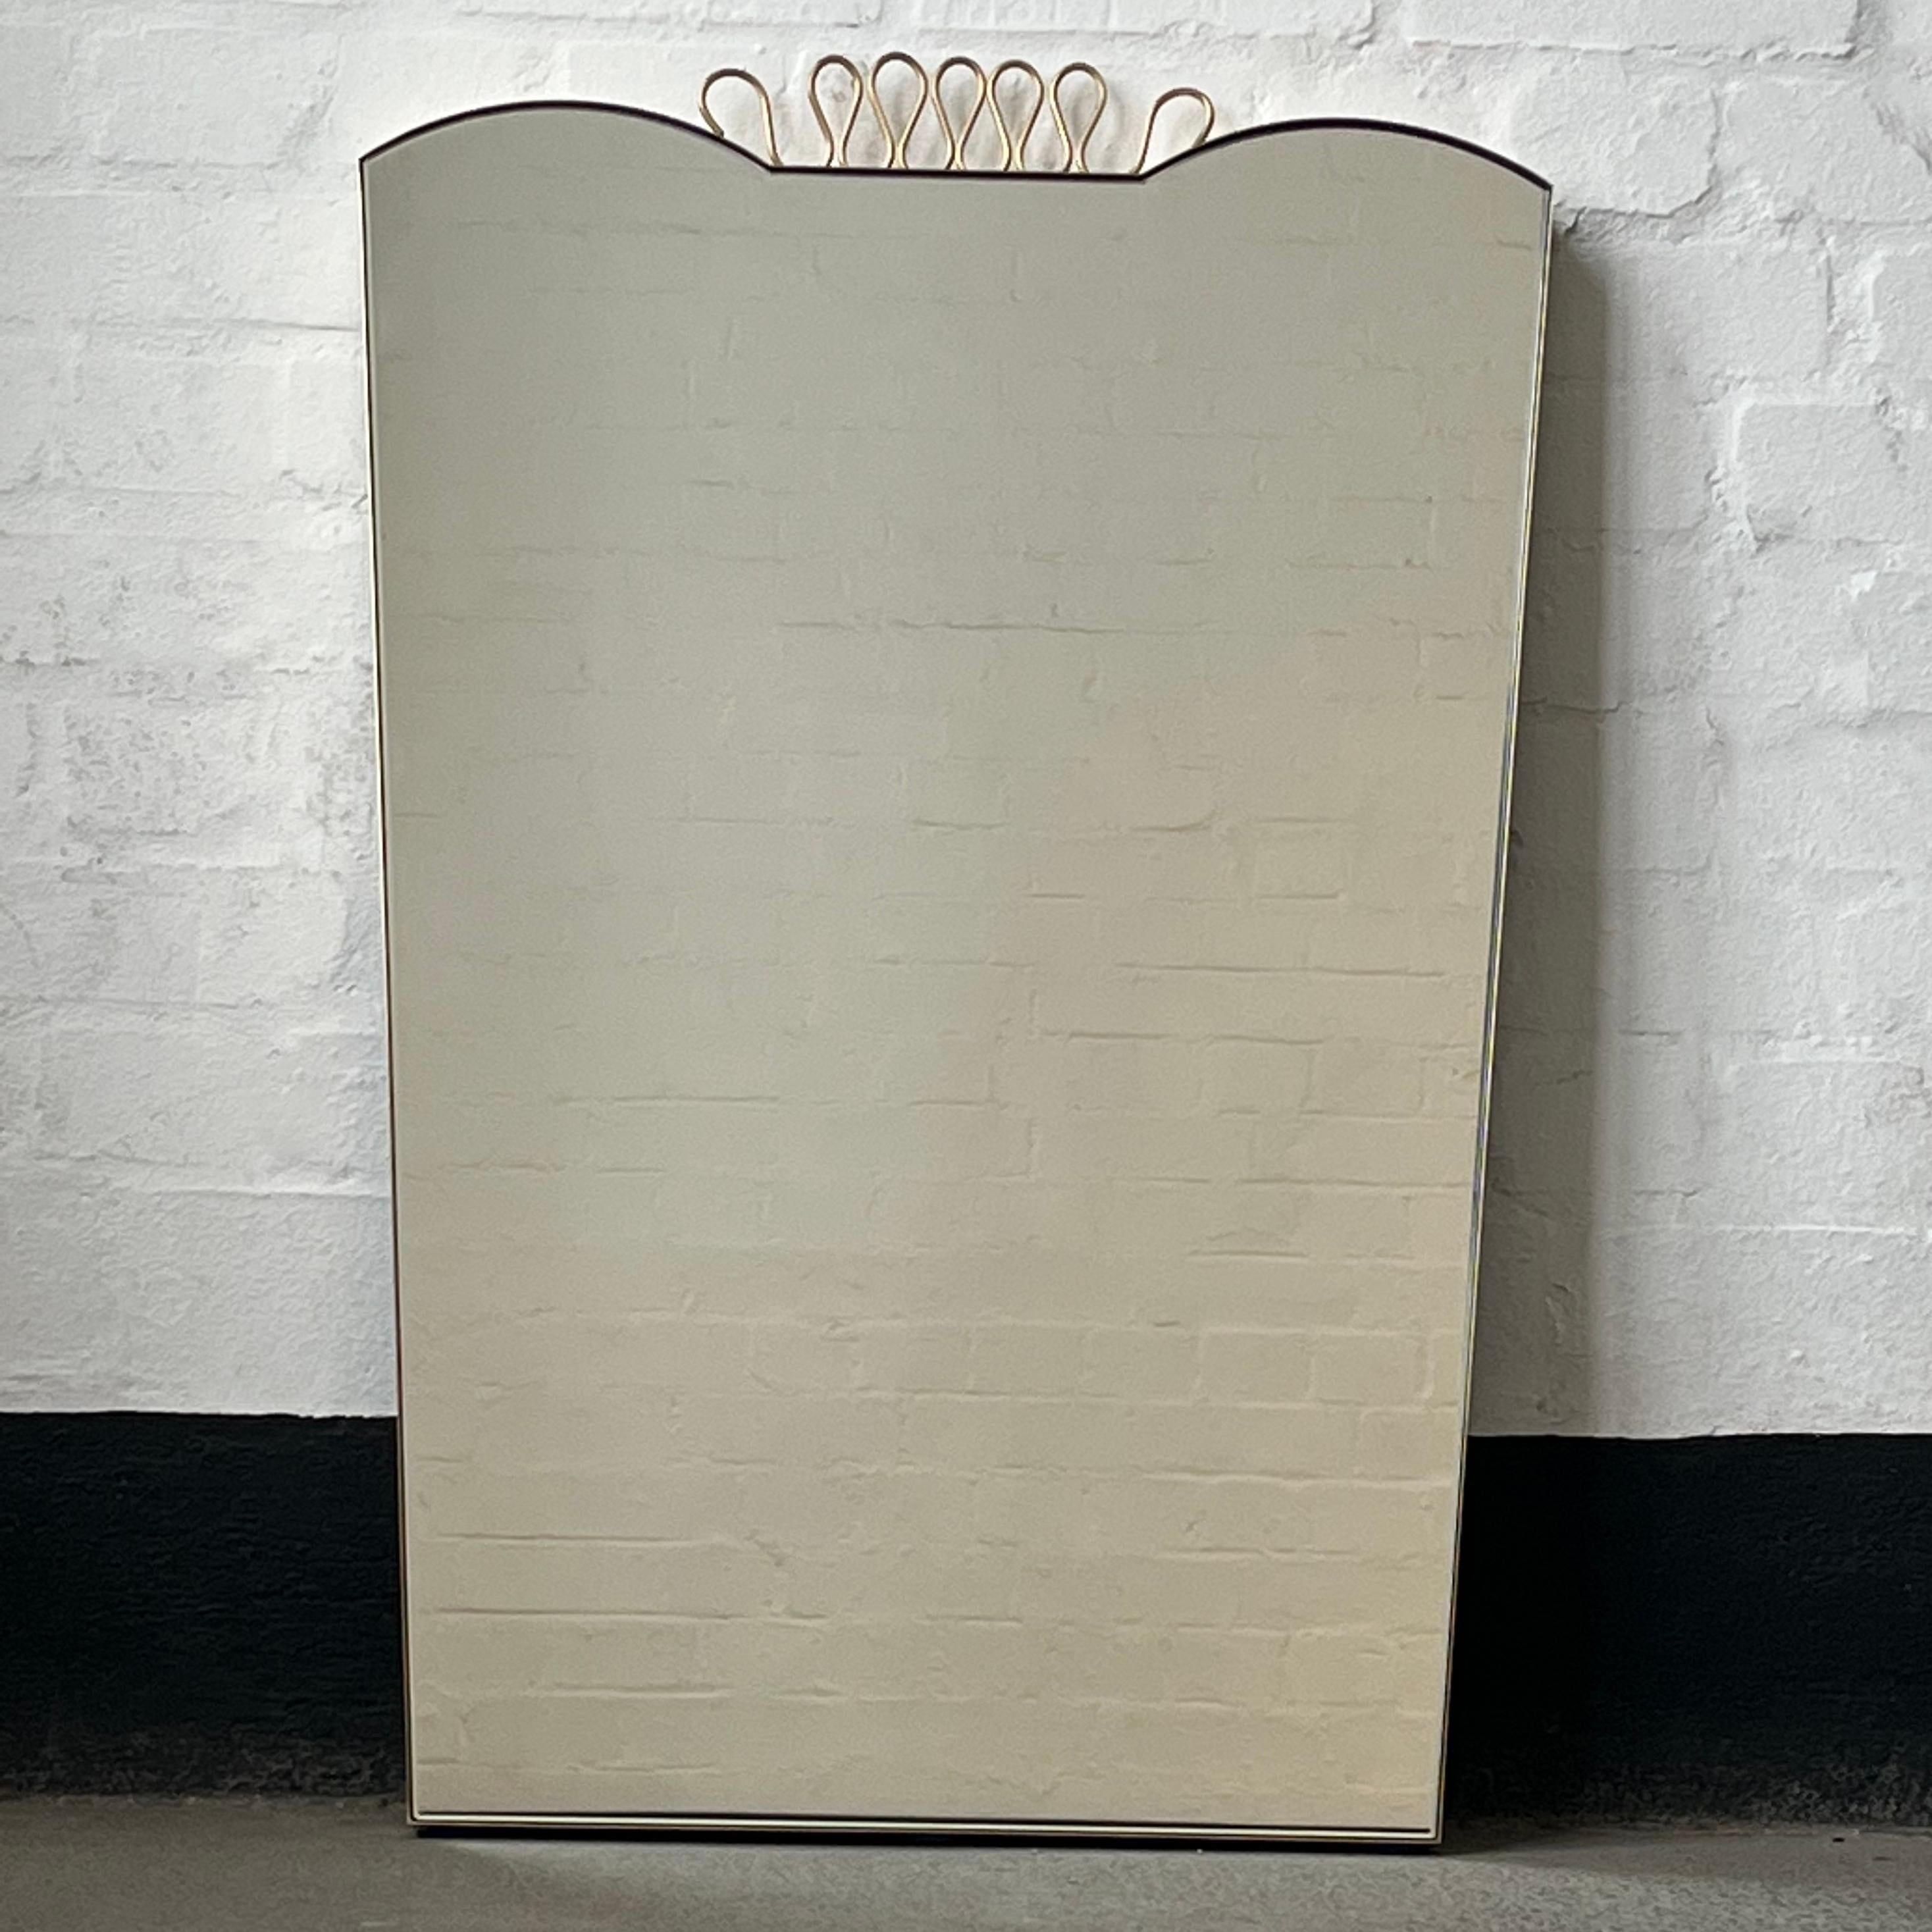 Exquisiter Spiegel mit minimalistischem Messingrahmen und geschwungenen dekorativen Details, inspiriert von der berühmten Arbeit des italienischen Designers Gio Ponti. Handgefertigt in London, UK, nach sehr hohen Qualitätsstandards aus reinem,